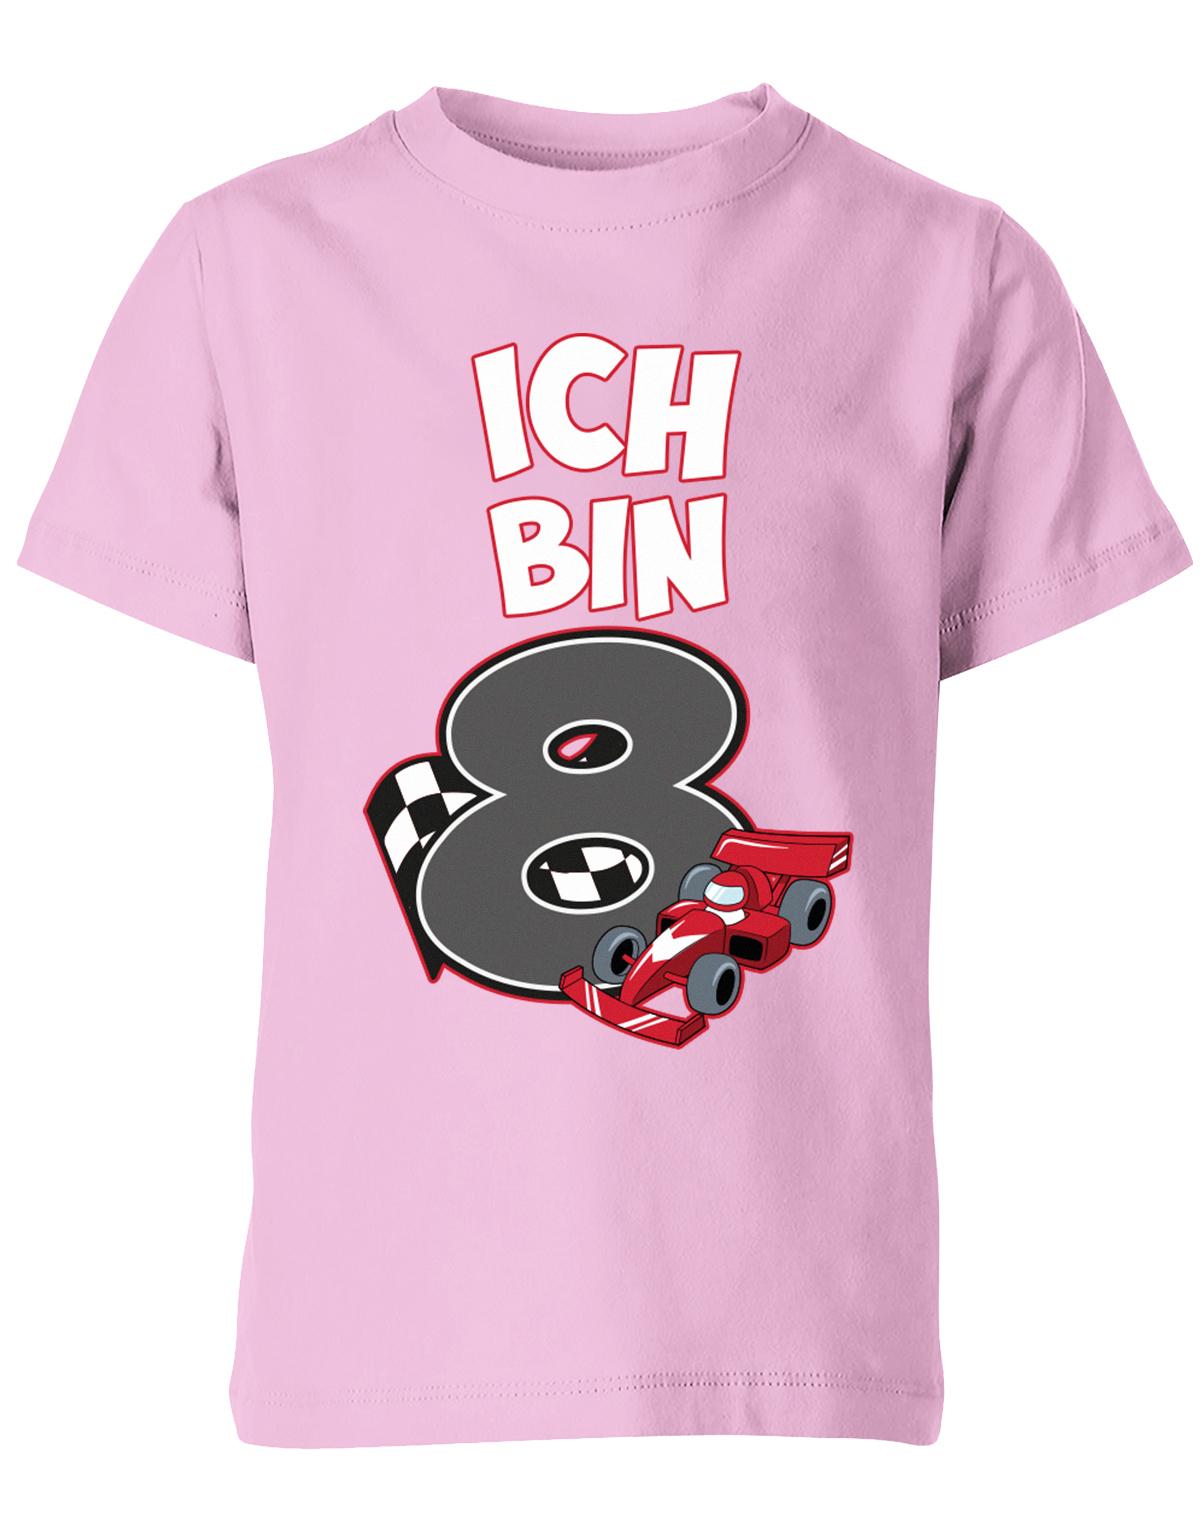 ich-bin-8-autorennen-rennwagen-geburtstag-rennfahrer-kinder-shirt-rosa